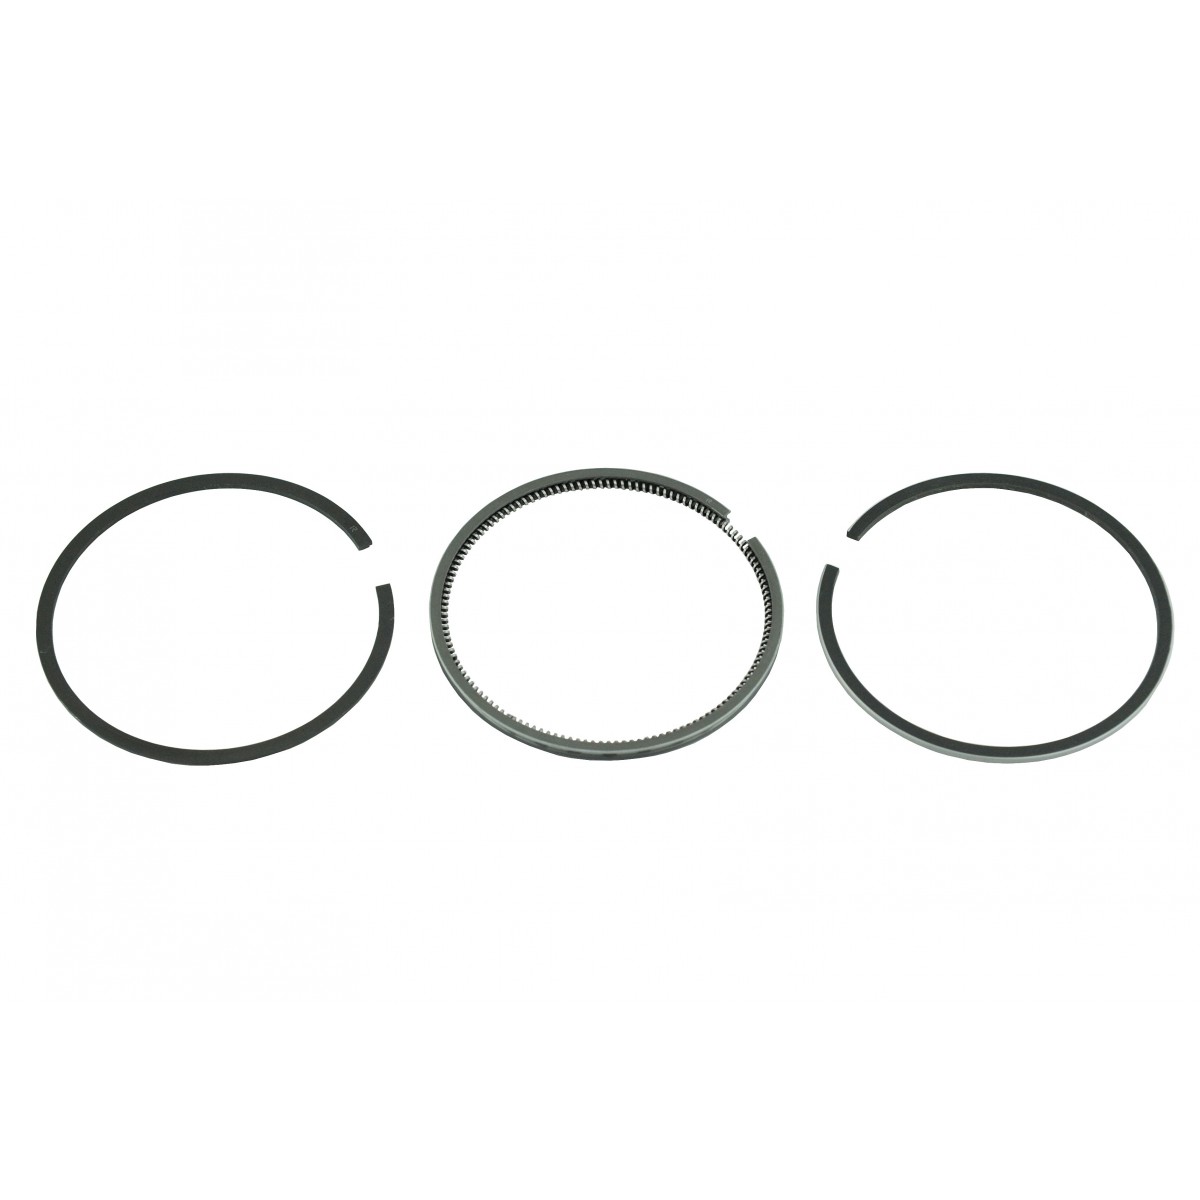 Piston rings Mitsubishi L2E, L3E, MT135, MT14, MT15, MT155, MT165